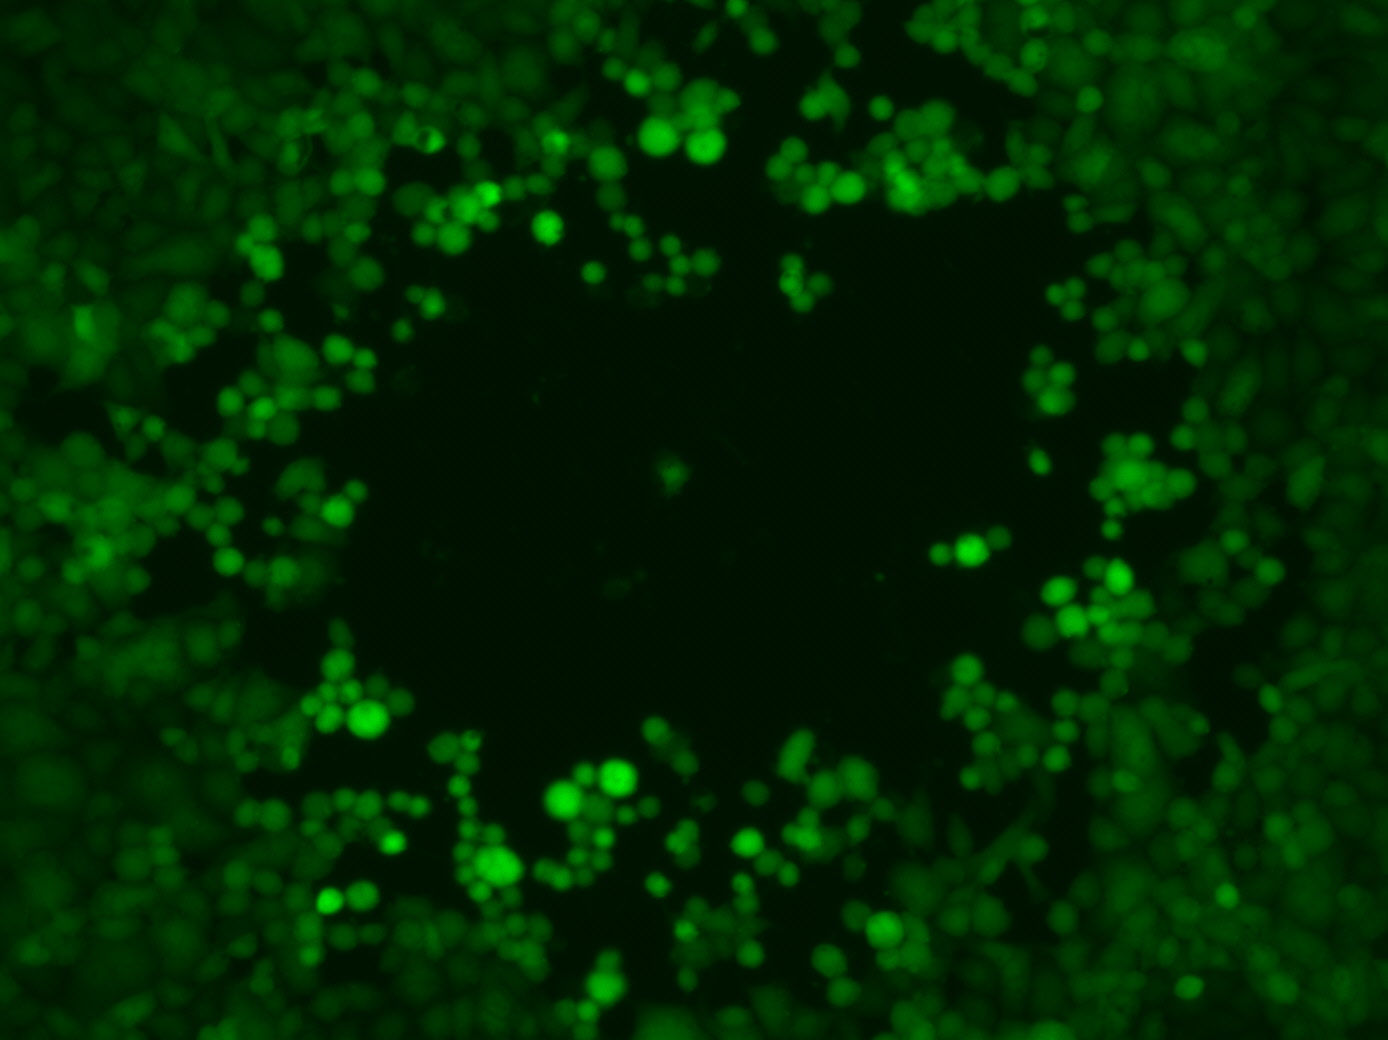 Plaquebildung durch grün fluoreszierende HSV1-Viren.